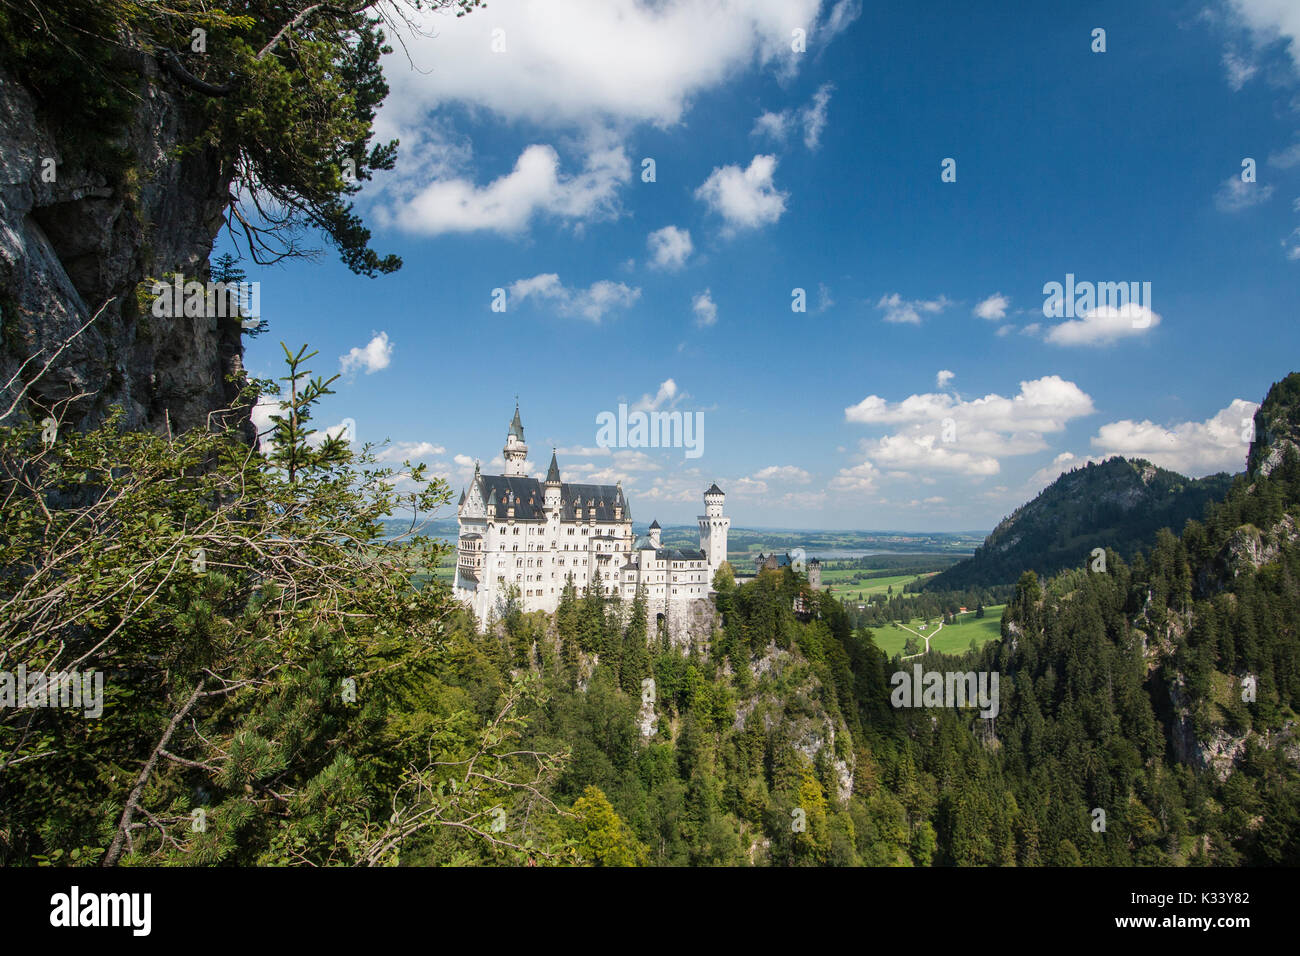 Le château de Neuschwanstein entouré de bois Fussen Bavière Allemagne du Sud Europe Banque D'Images